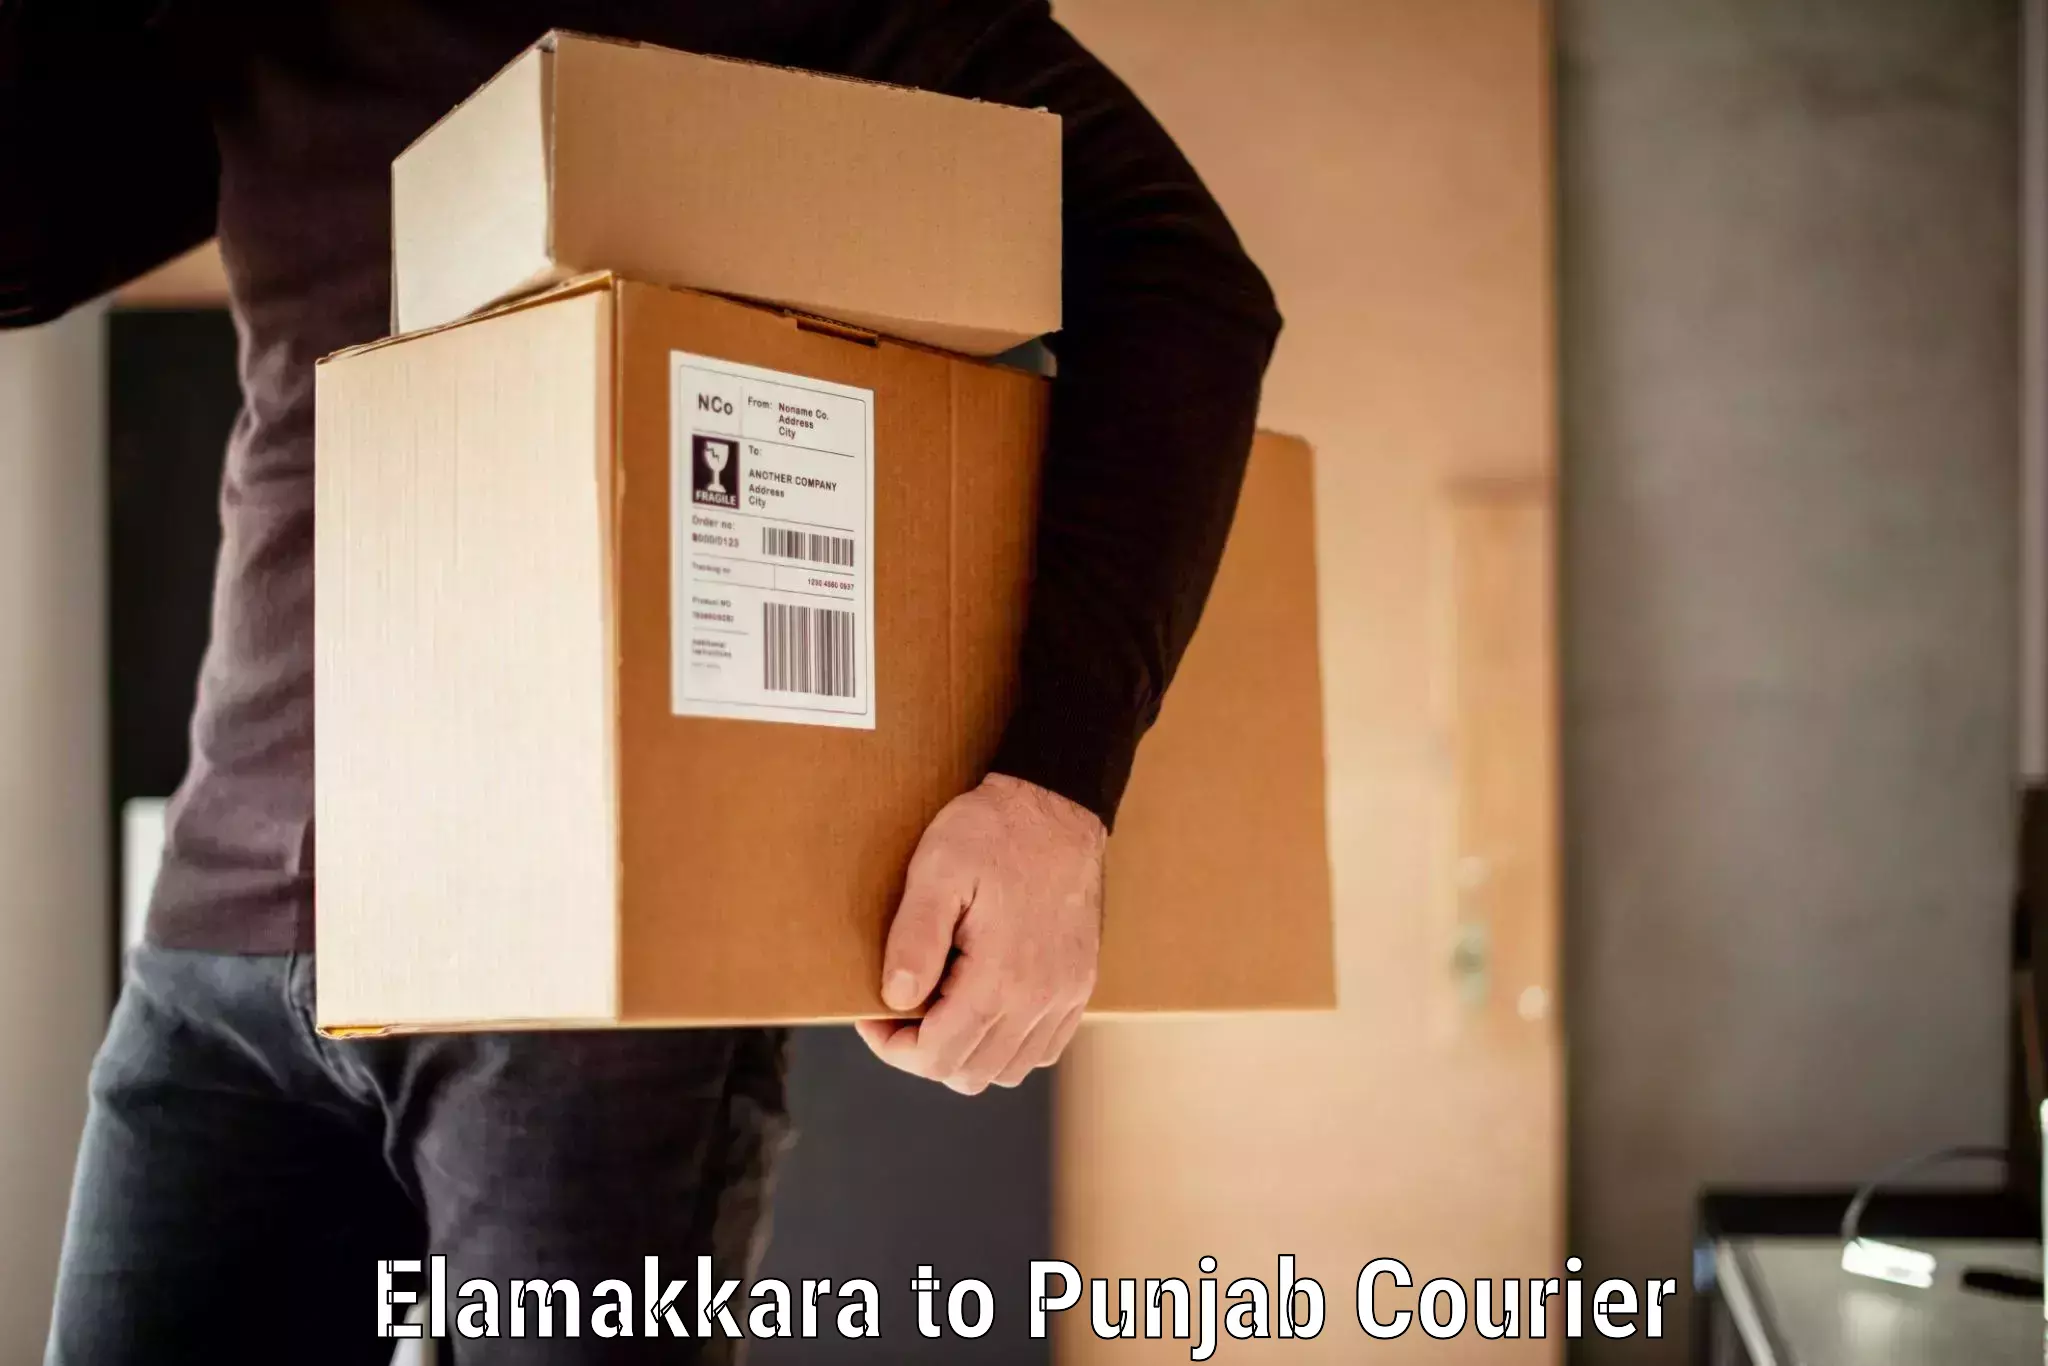 Luggage transport company Elamakkara to Kapurthala